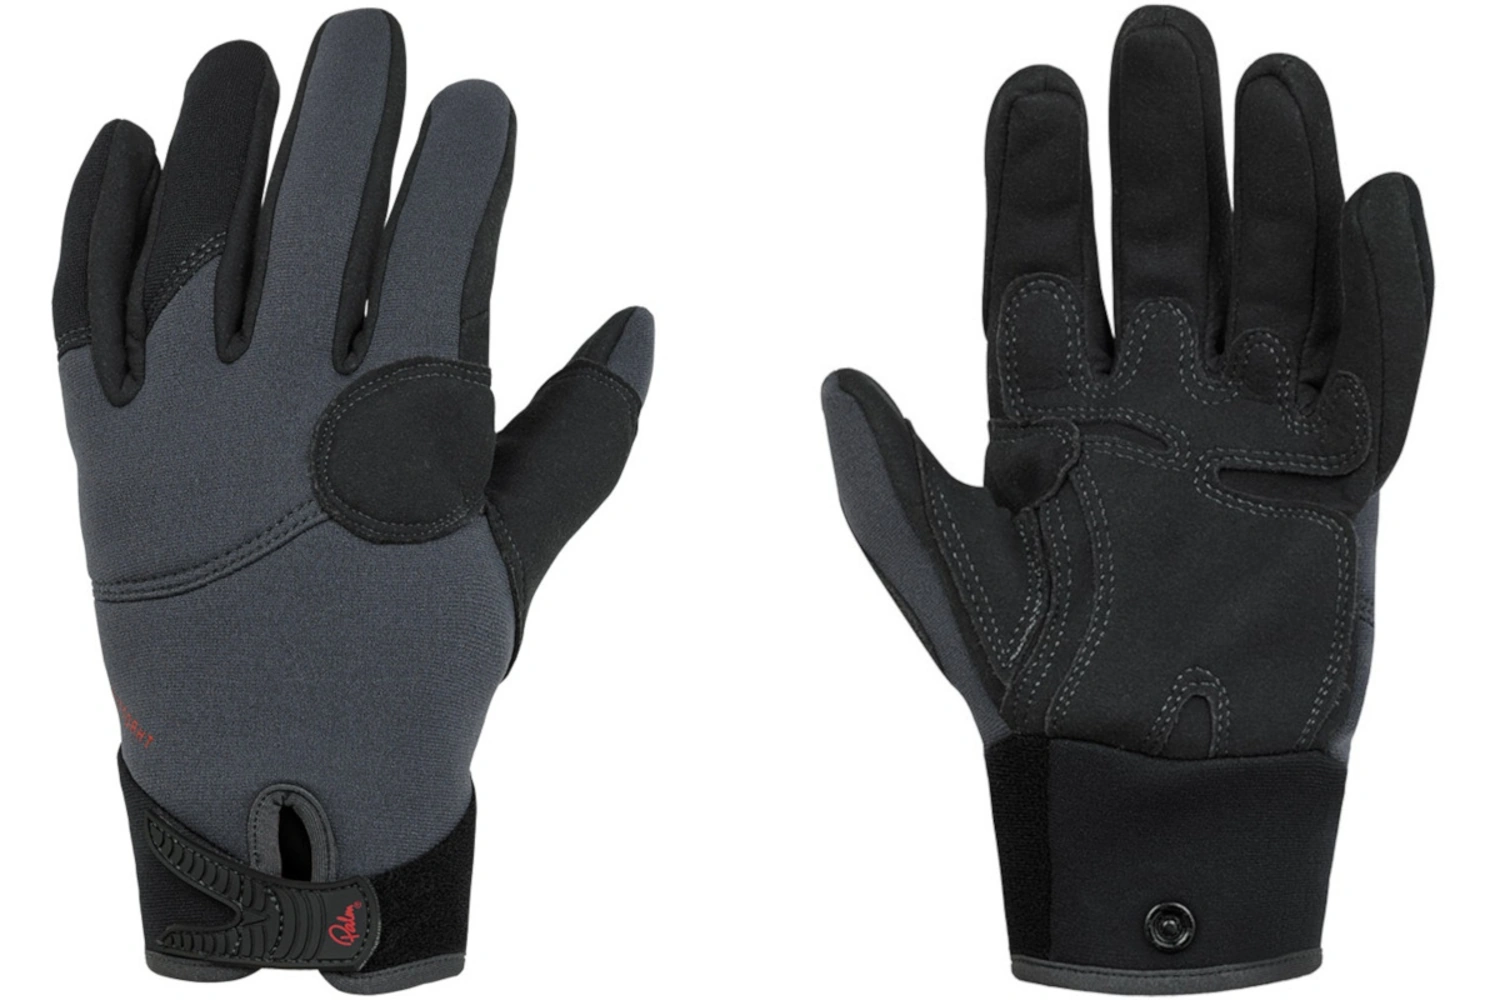 Palm Throttle Gloves for Canoeing & Kayaking